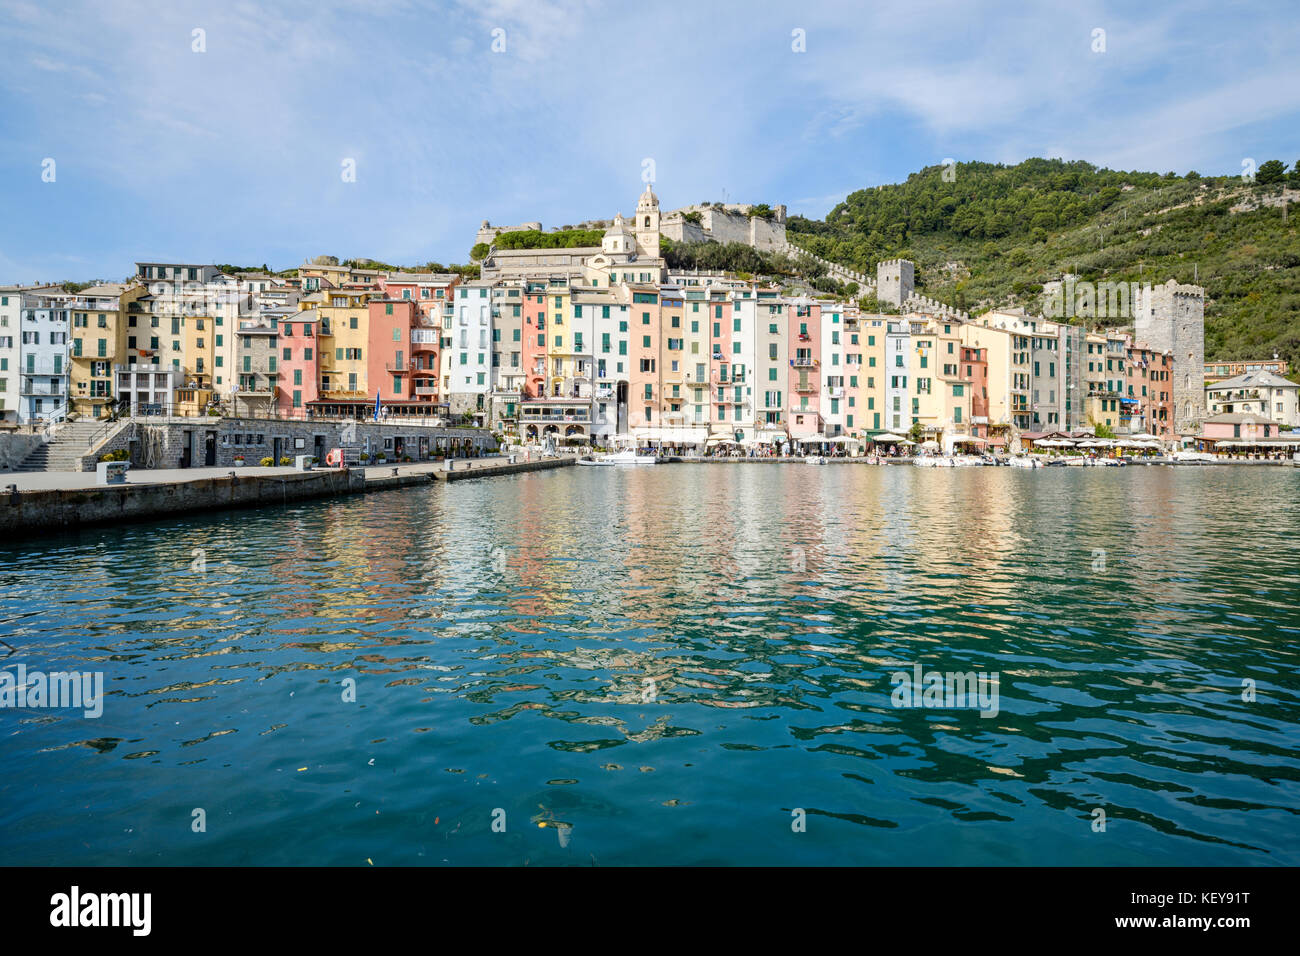 Porto Venere Old Town, Liguria, Italy Stock Photo